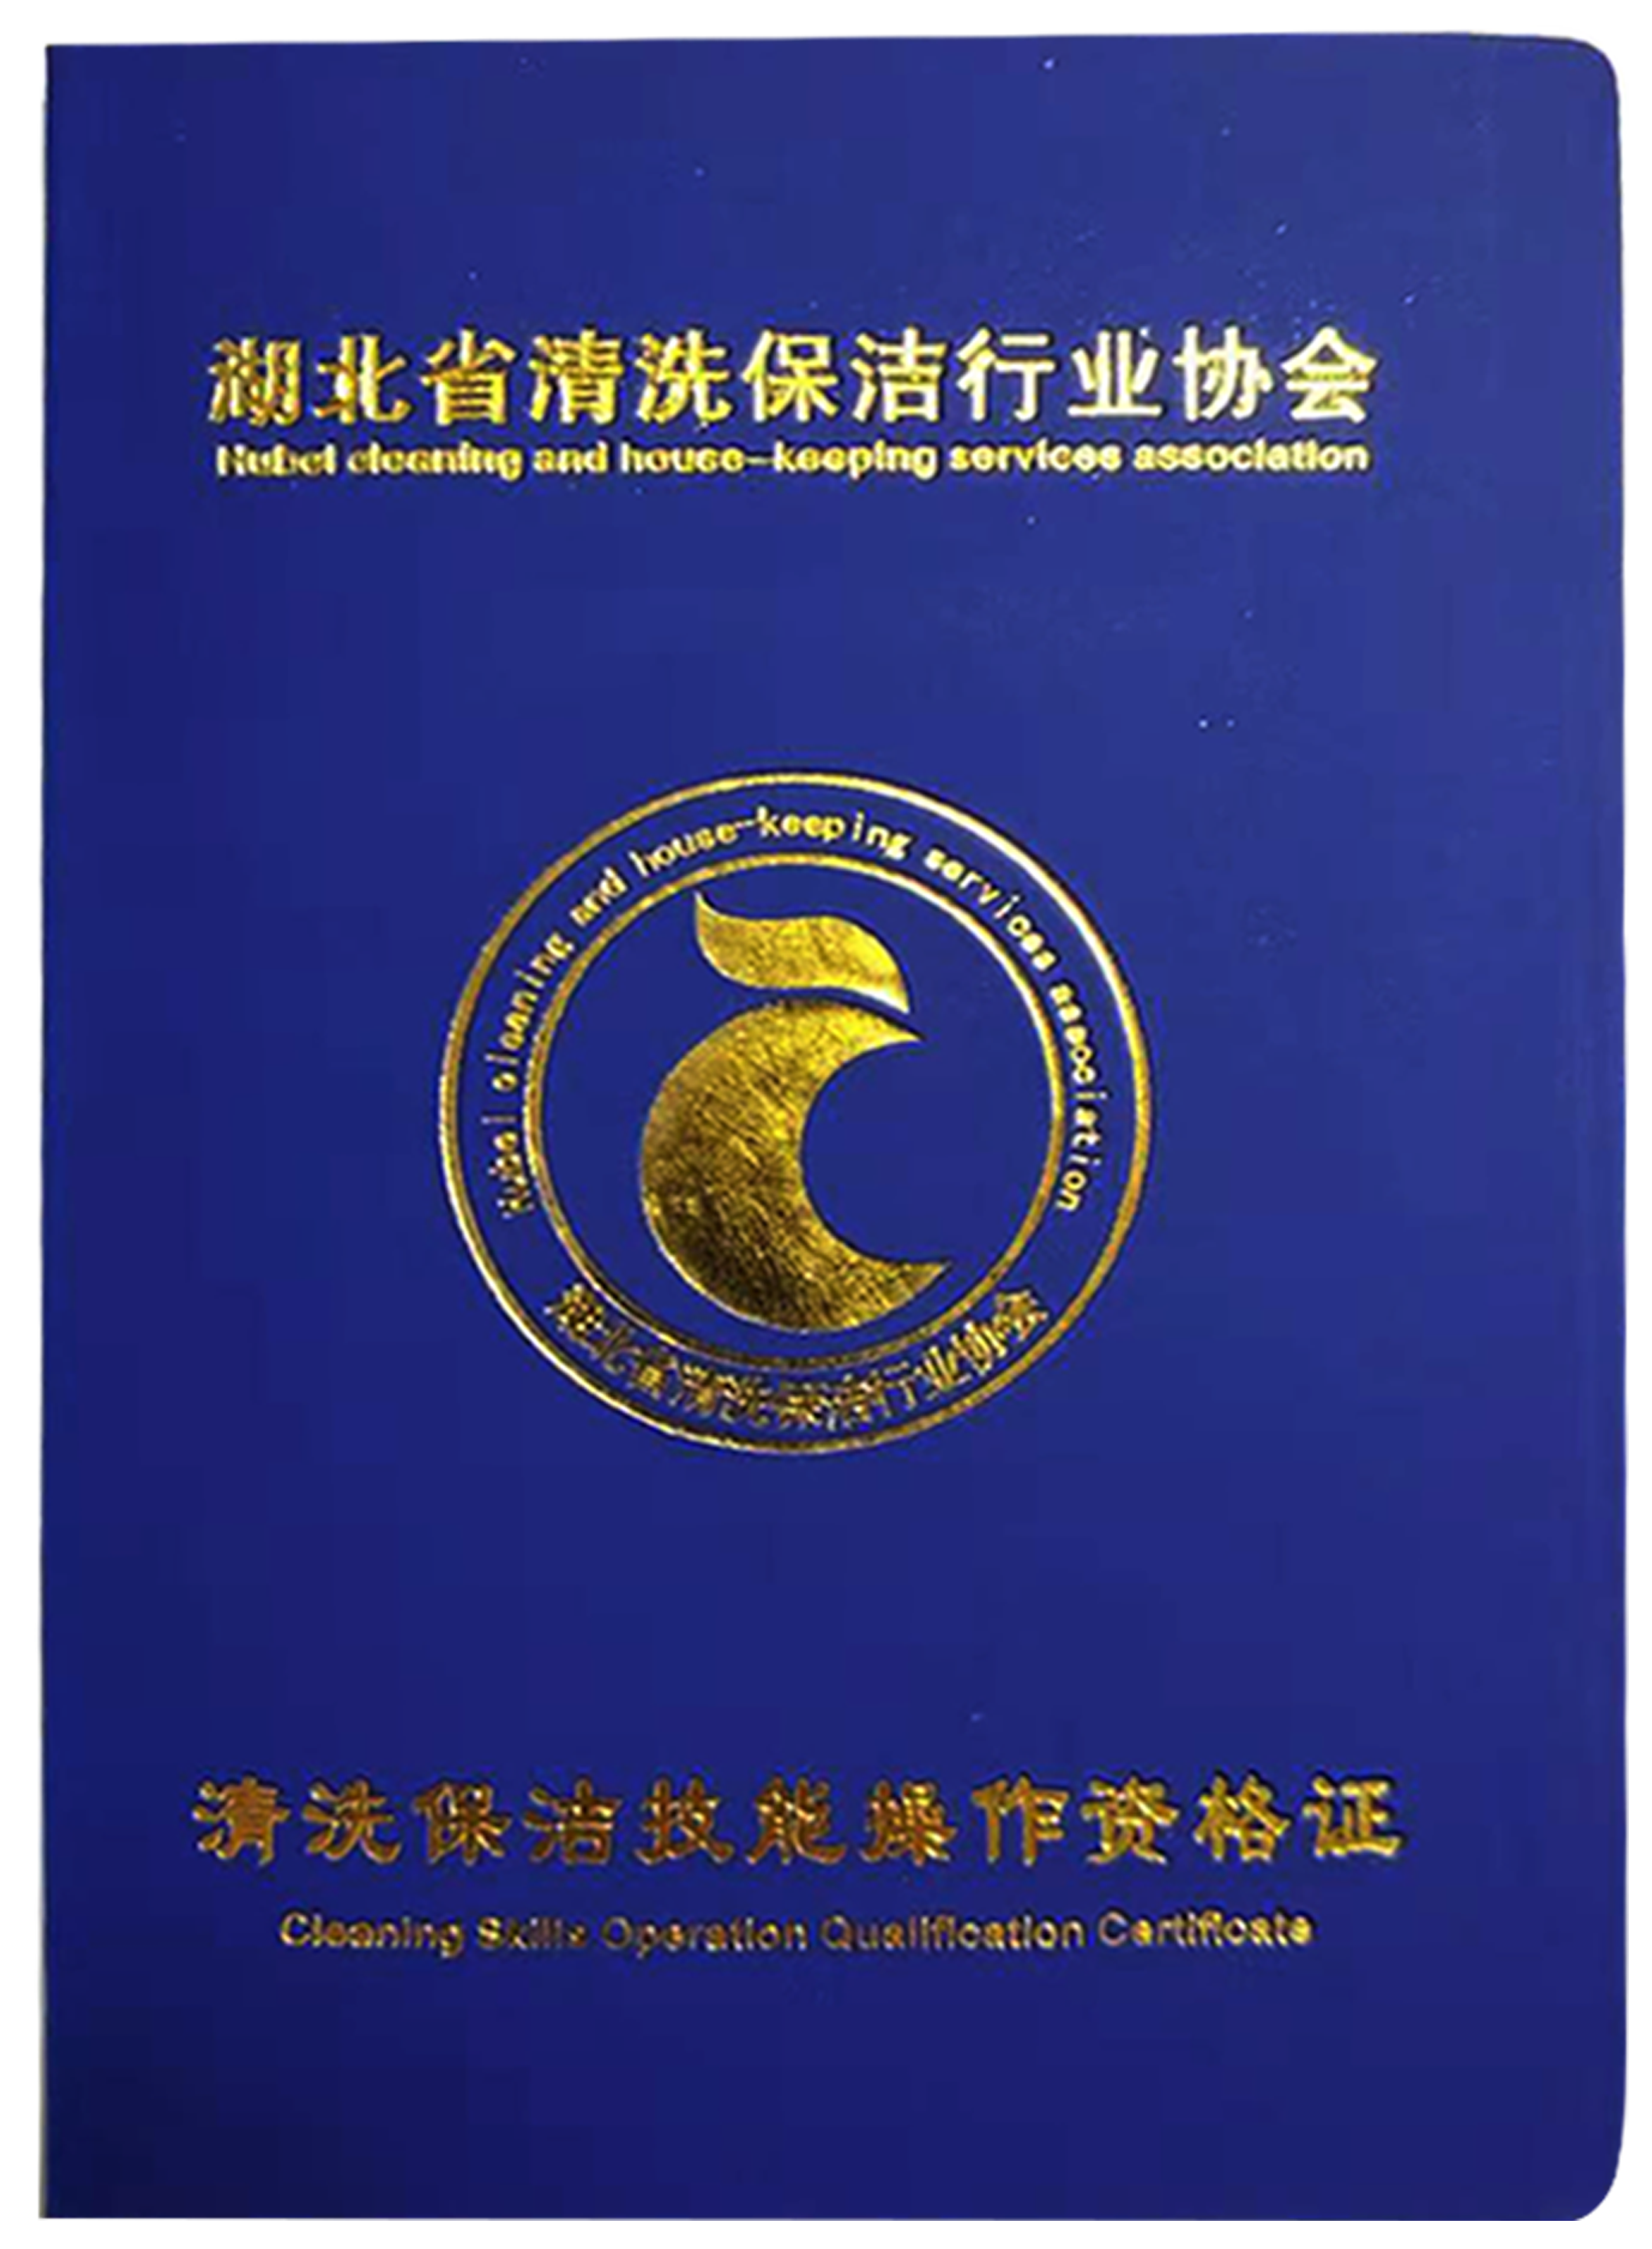 湖北省首批经权威机构颁发的家电清洗技师资格证新鲜出炉